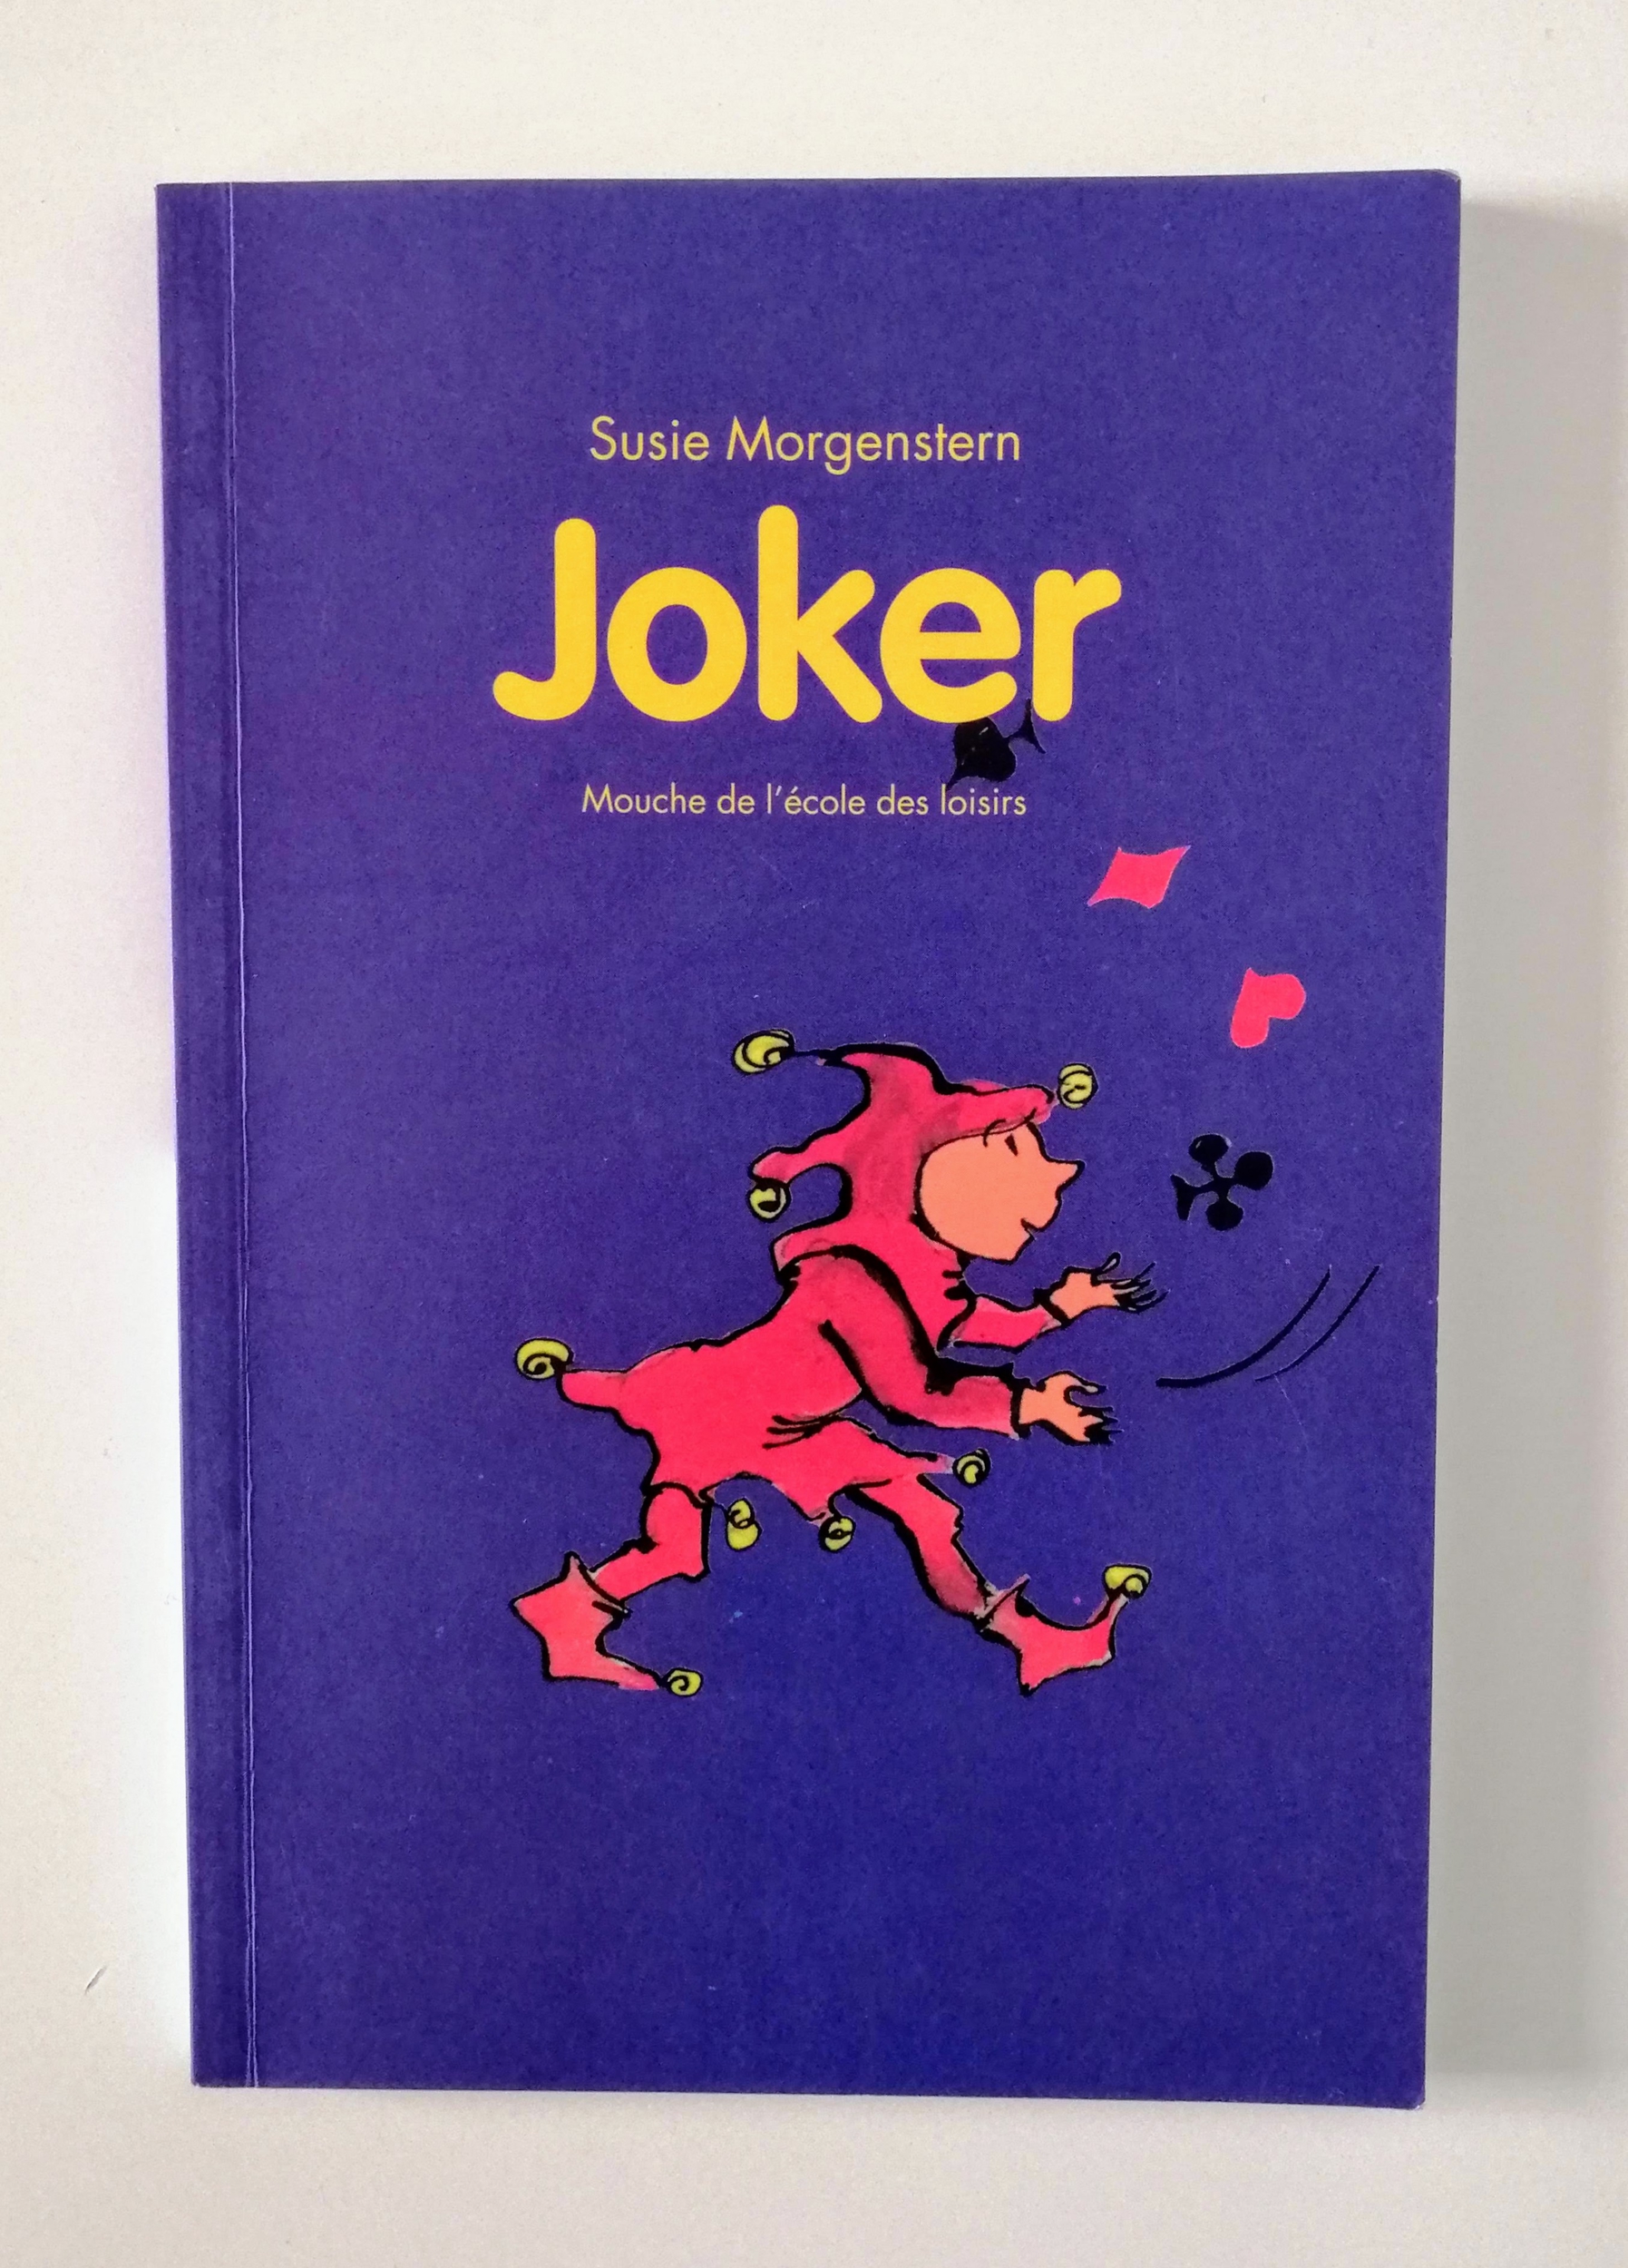 Joker (Susie Morgenstern)